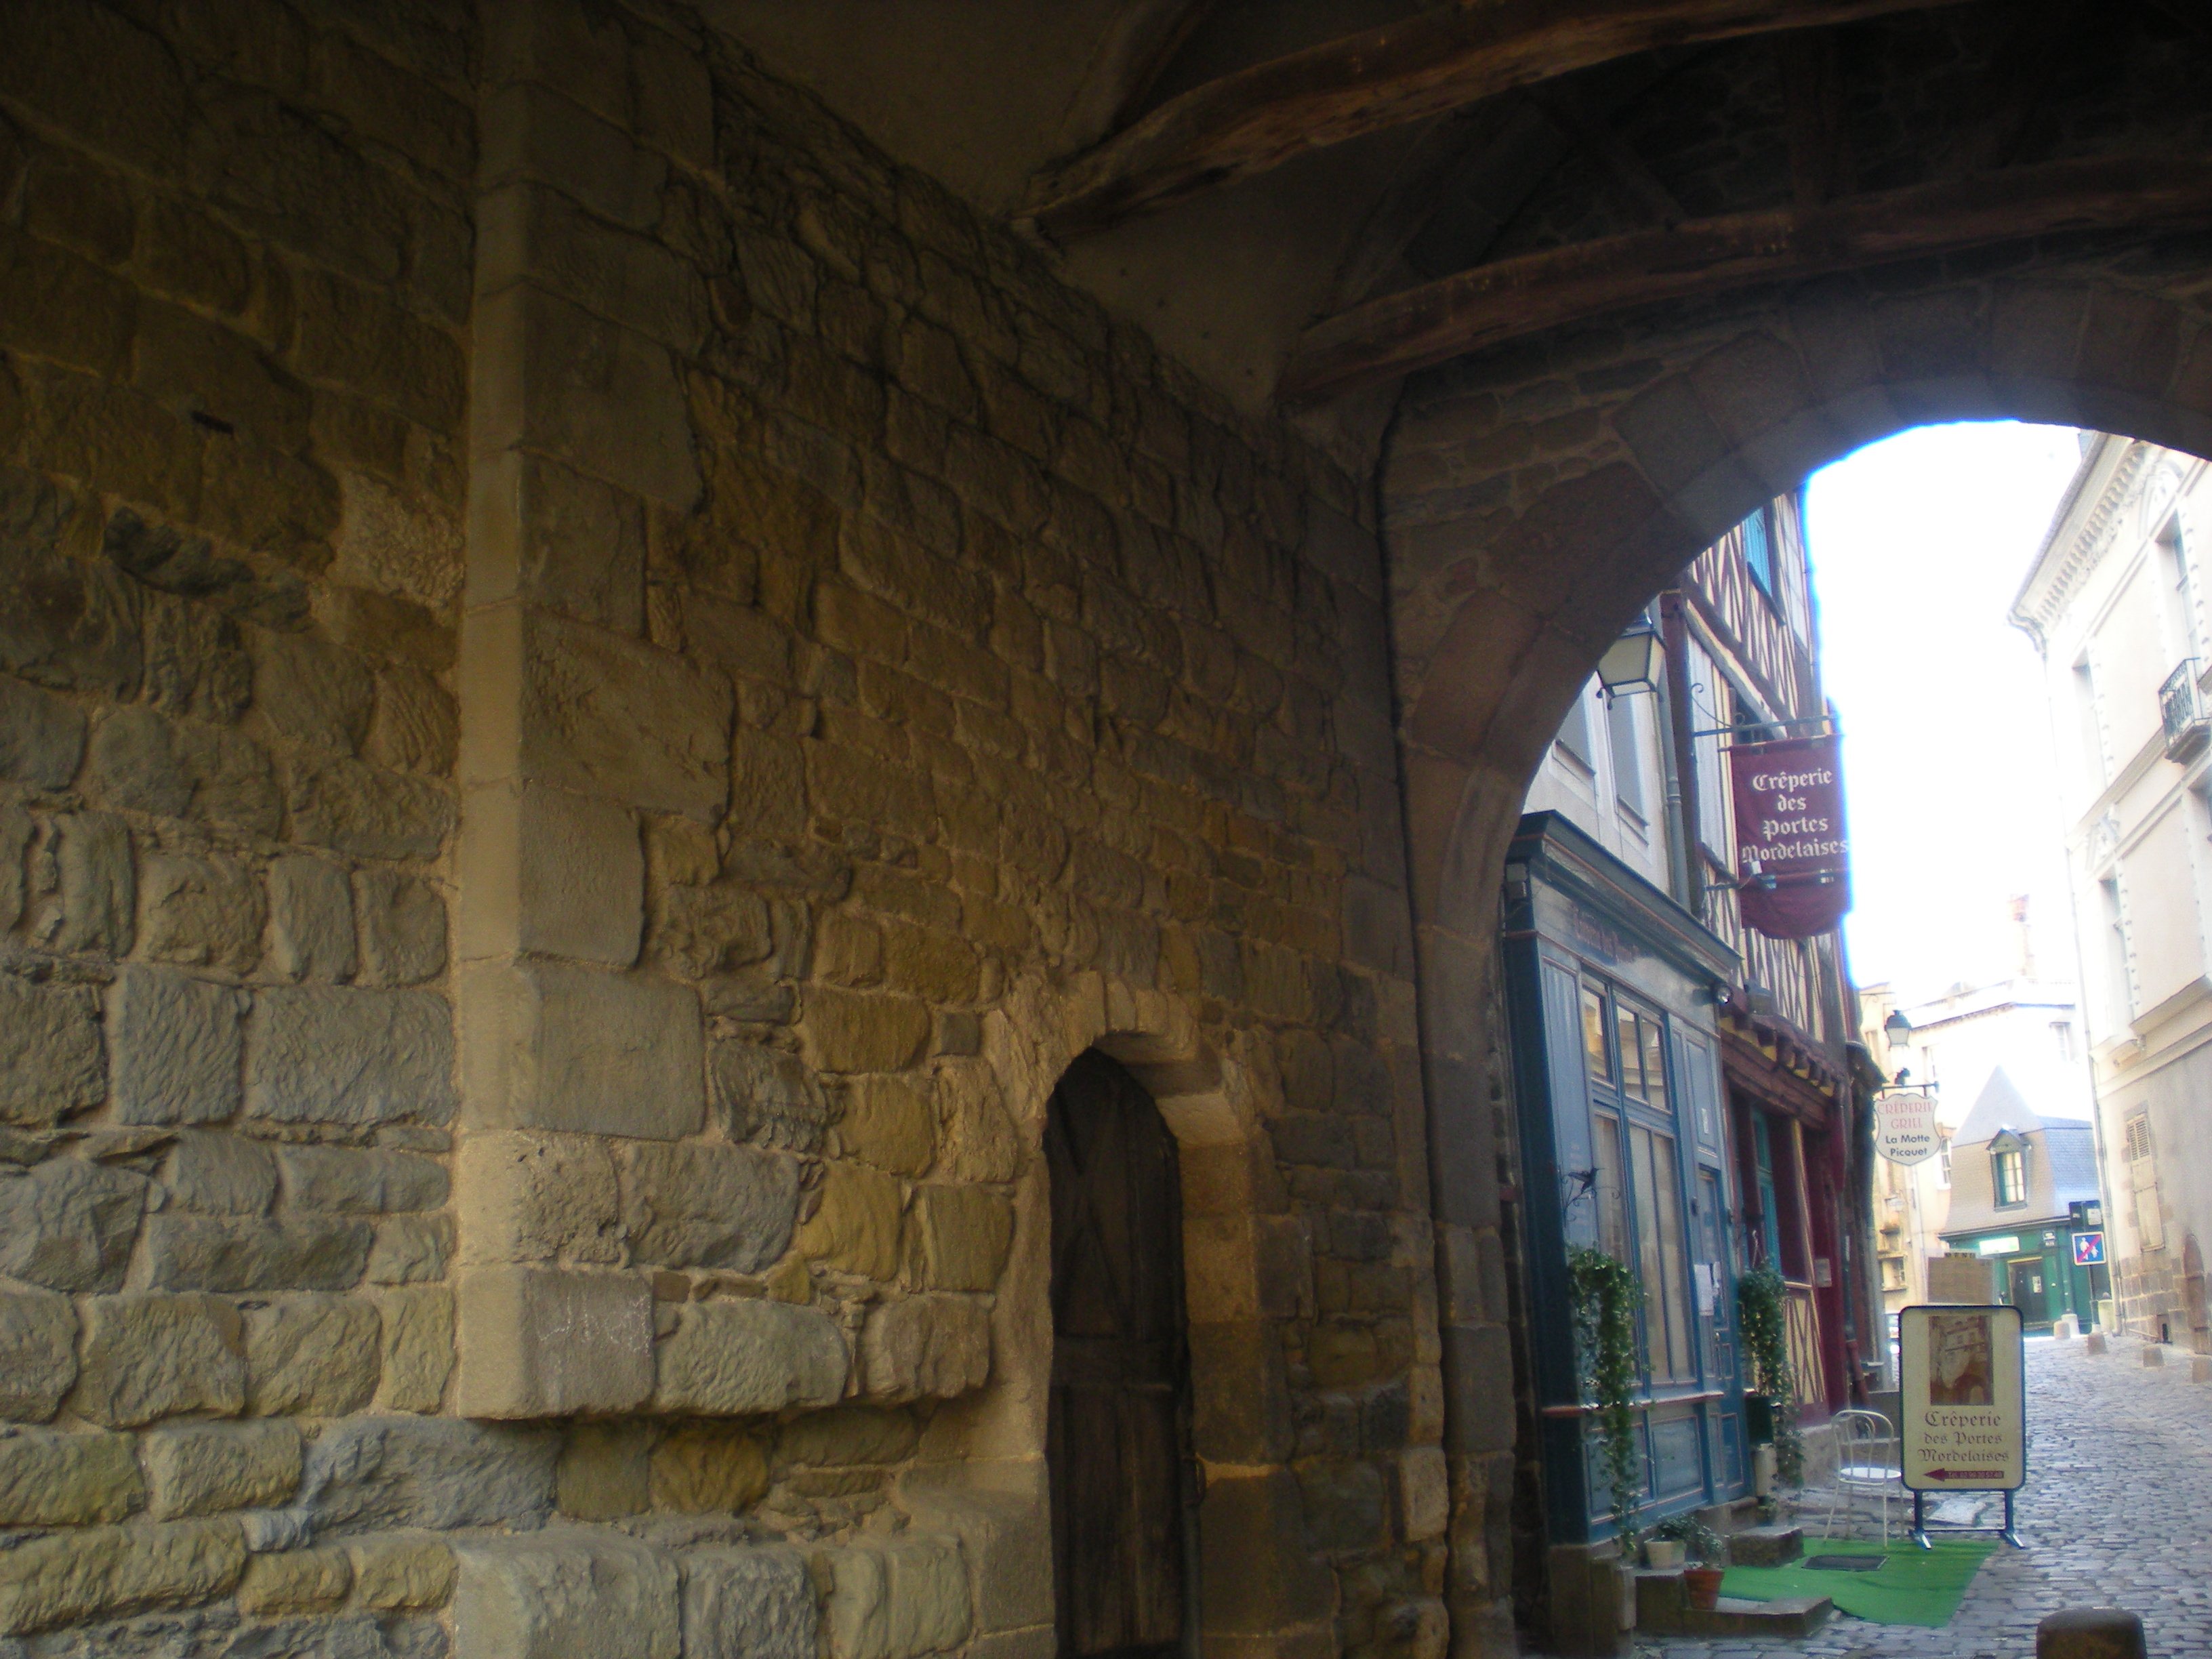 Mur en pierre à l'intérieur de la porte, le passage se prolongeant sur la rue Mordelaise avec ses façades à colombage.